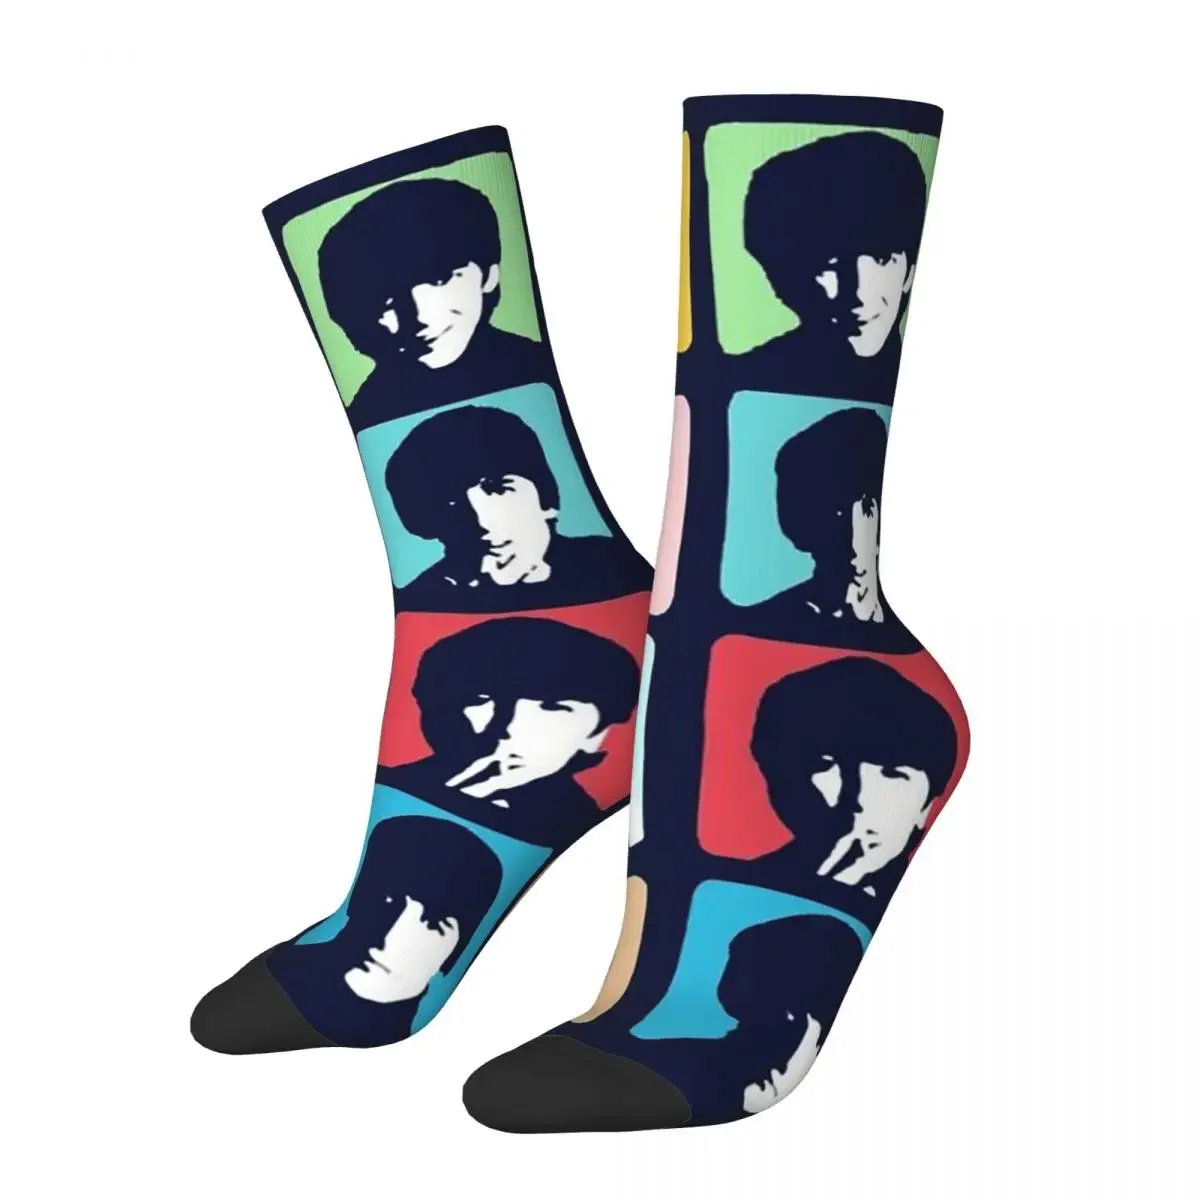 

Носки The Beatle, повседневные носки из полиэстера, носки в стиле хип-хоп на весну и лето, подарки, новинка, невероятные носки в уличном стиле для мужчин и женщин